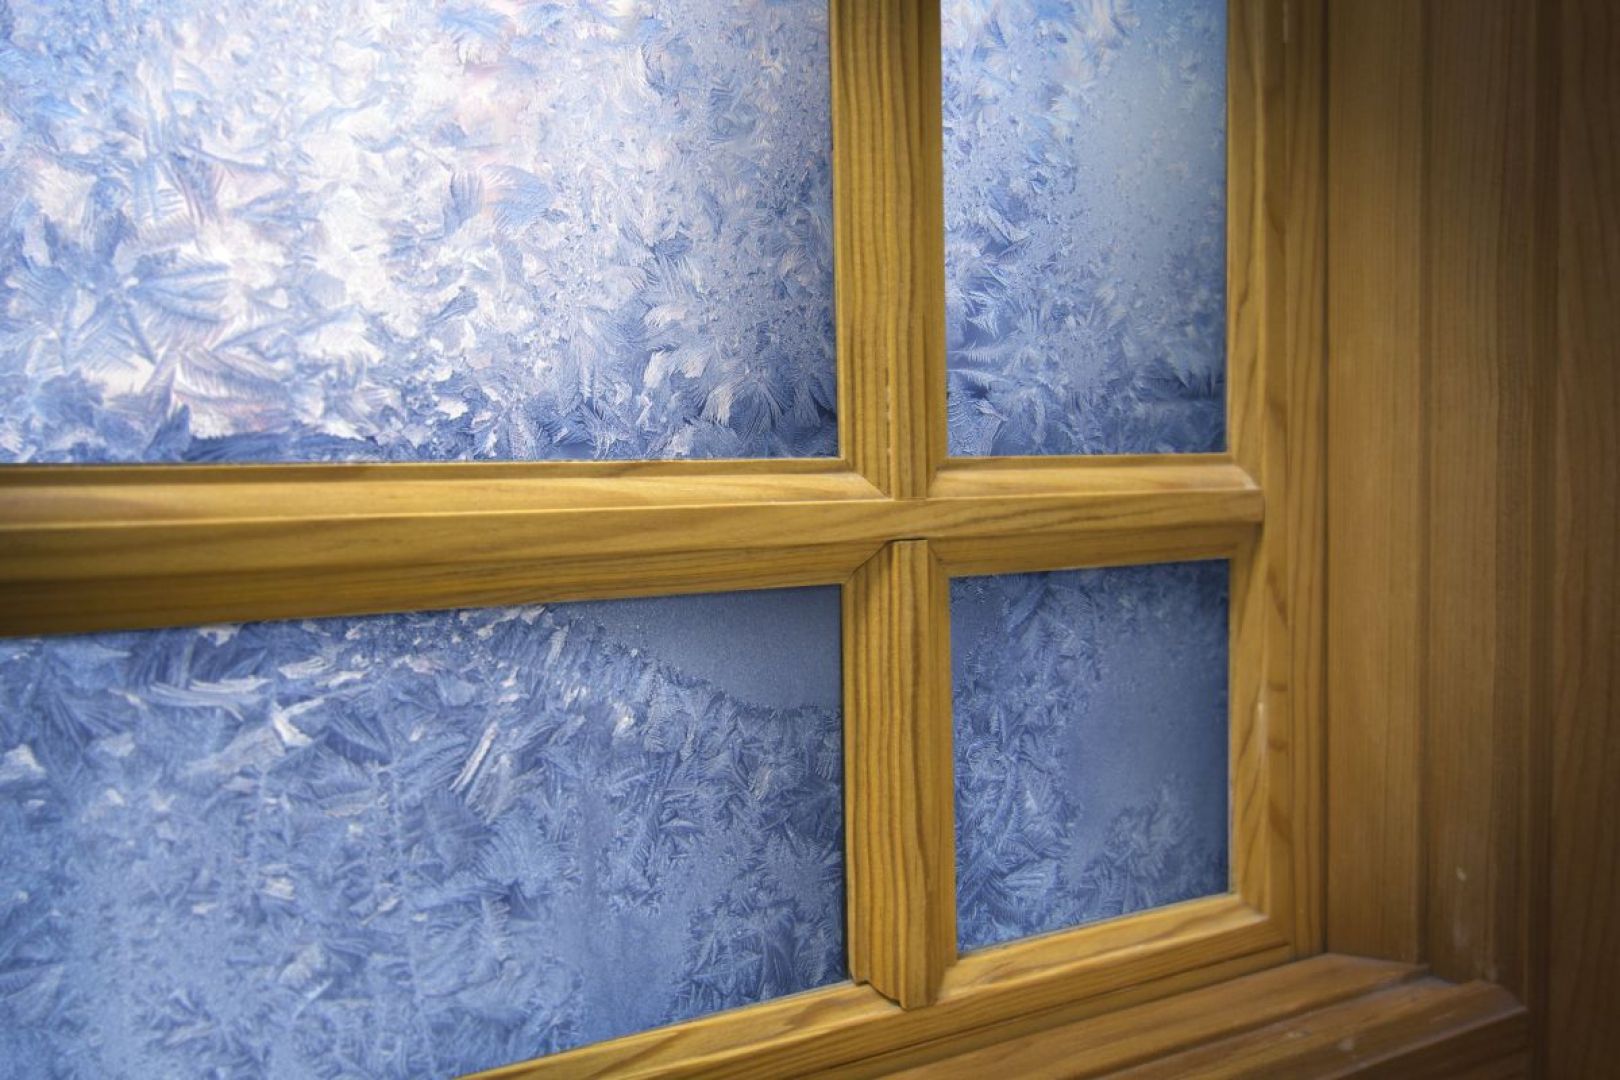 Nadmierna wilgotność staje się problemem, jeśli z jednej strony zainstalowaliśmy dobrze izolowane okna z jednokomorowymi szybami zespolonymi, z drugiej zaś wentylacja w naszym mieszkaniu jest mało efektywna. Dodatkowo, zaparowane okna podczas mrozów pokrywają się warstwą lodu. Fot. Shutterstock